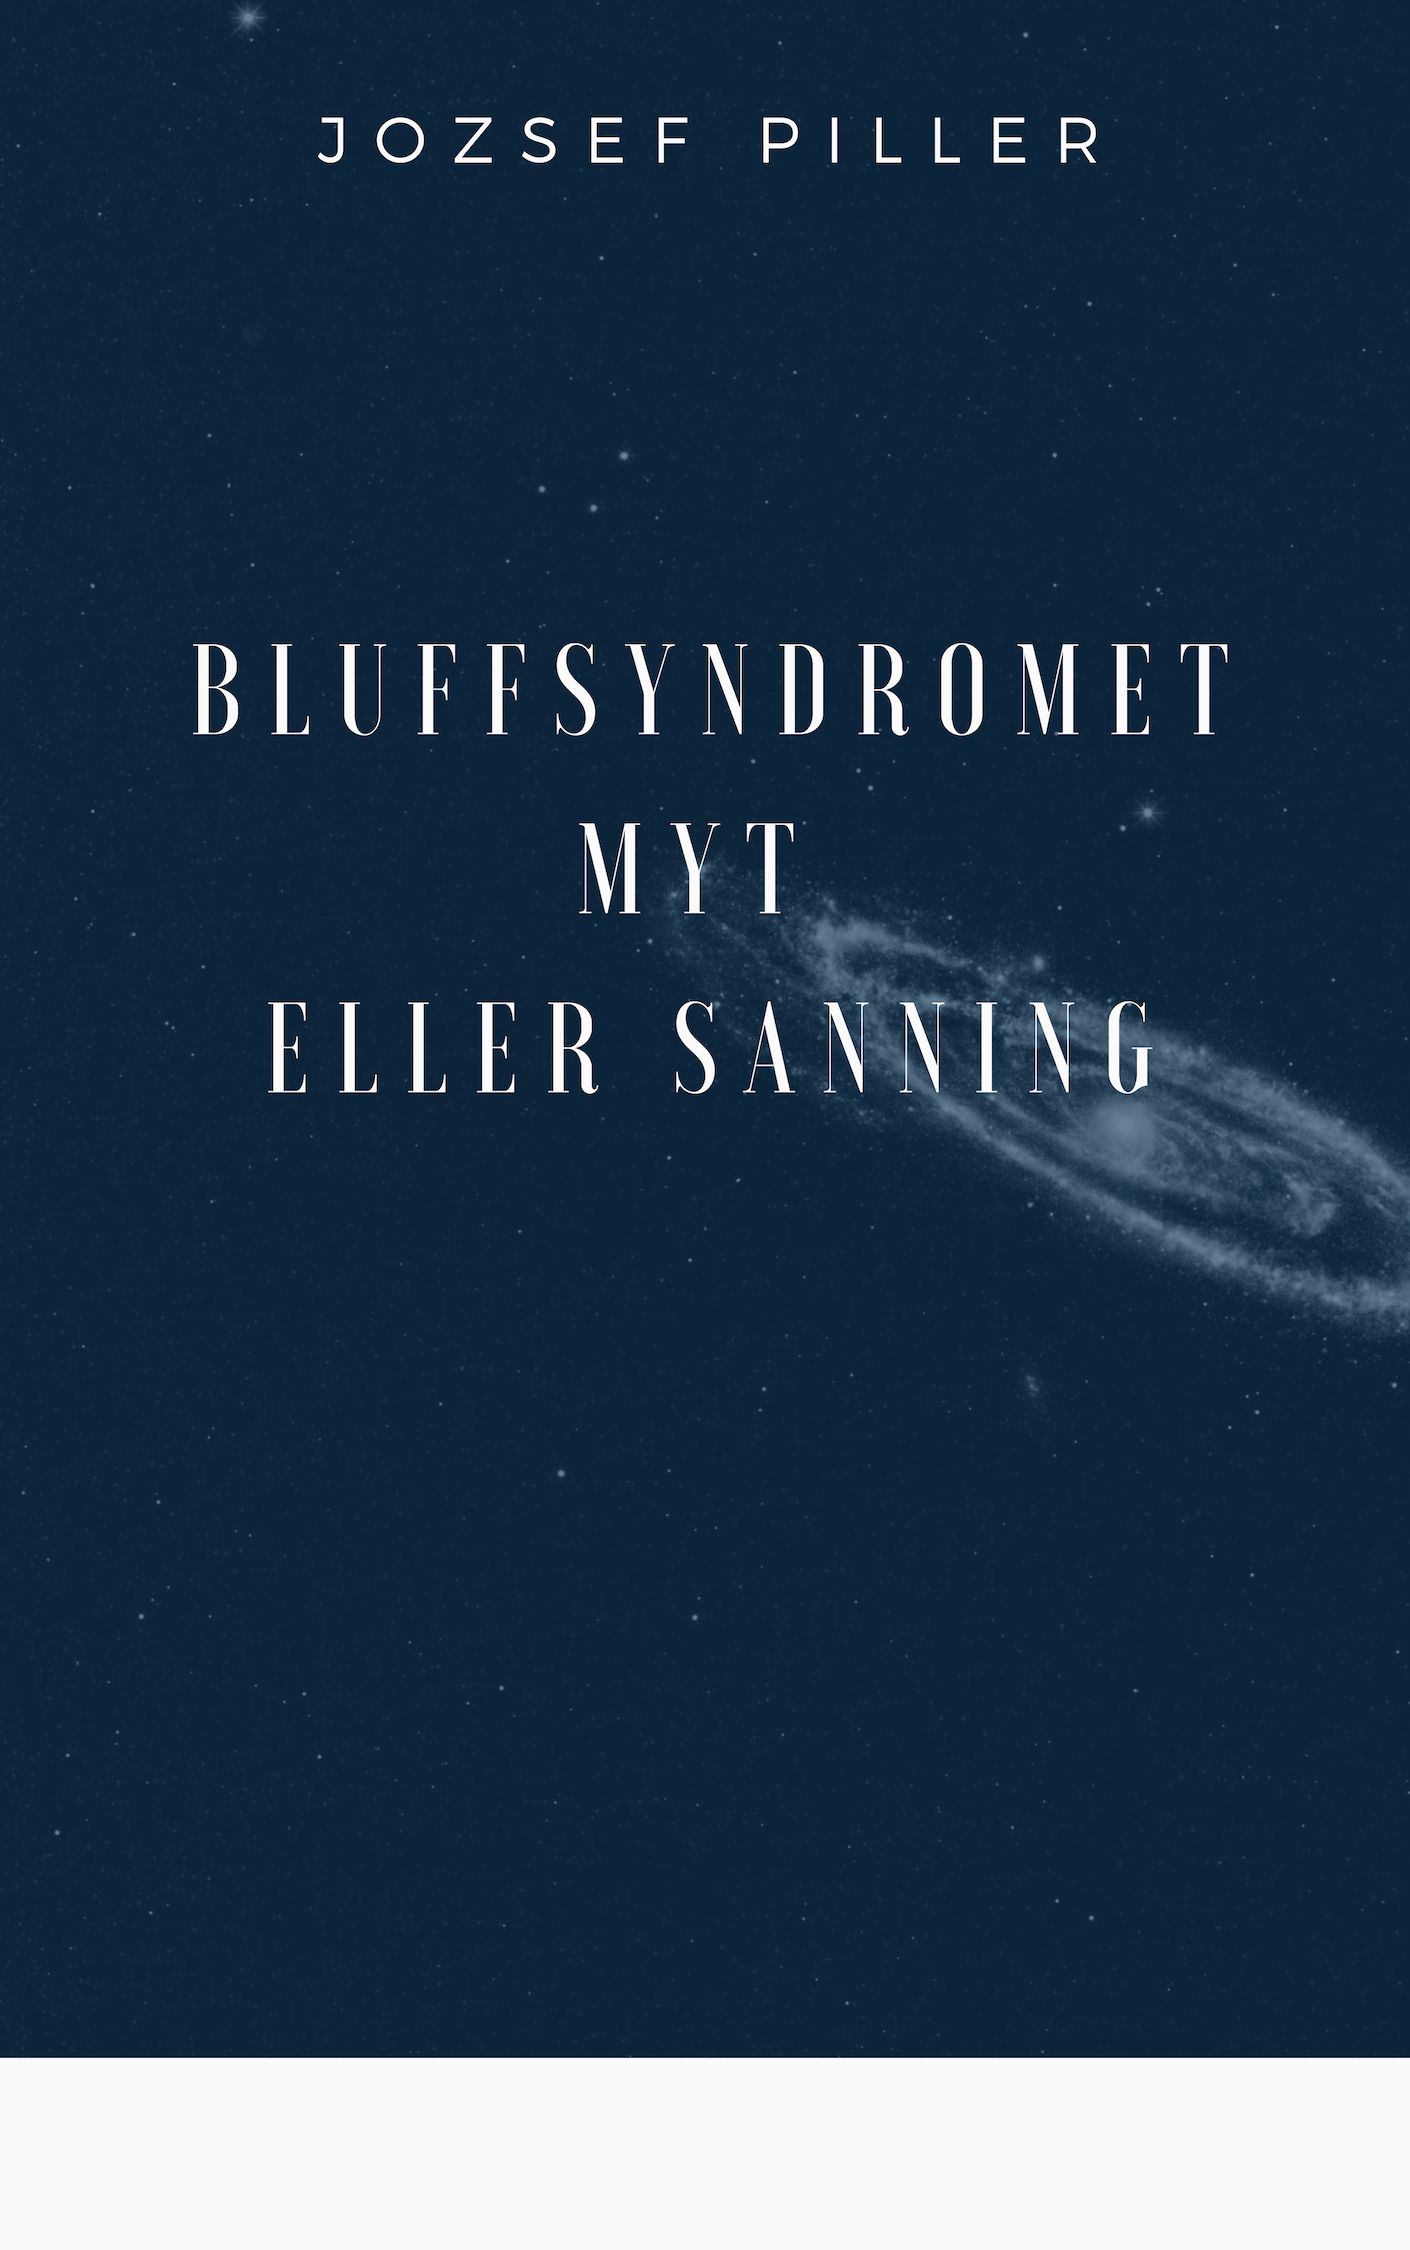 Bluffsyndromet - Myt eller sanning, ljudbok av Jozsef Piller